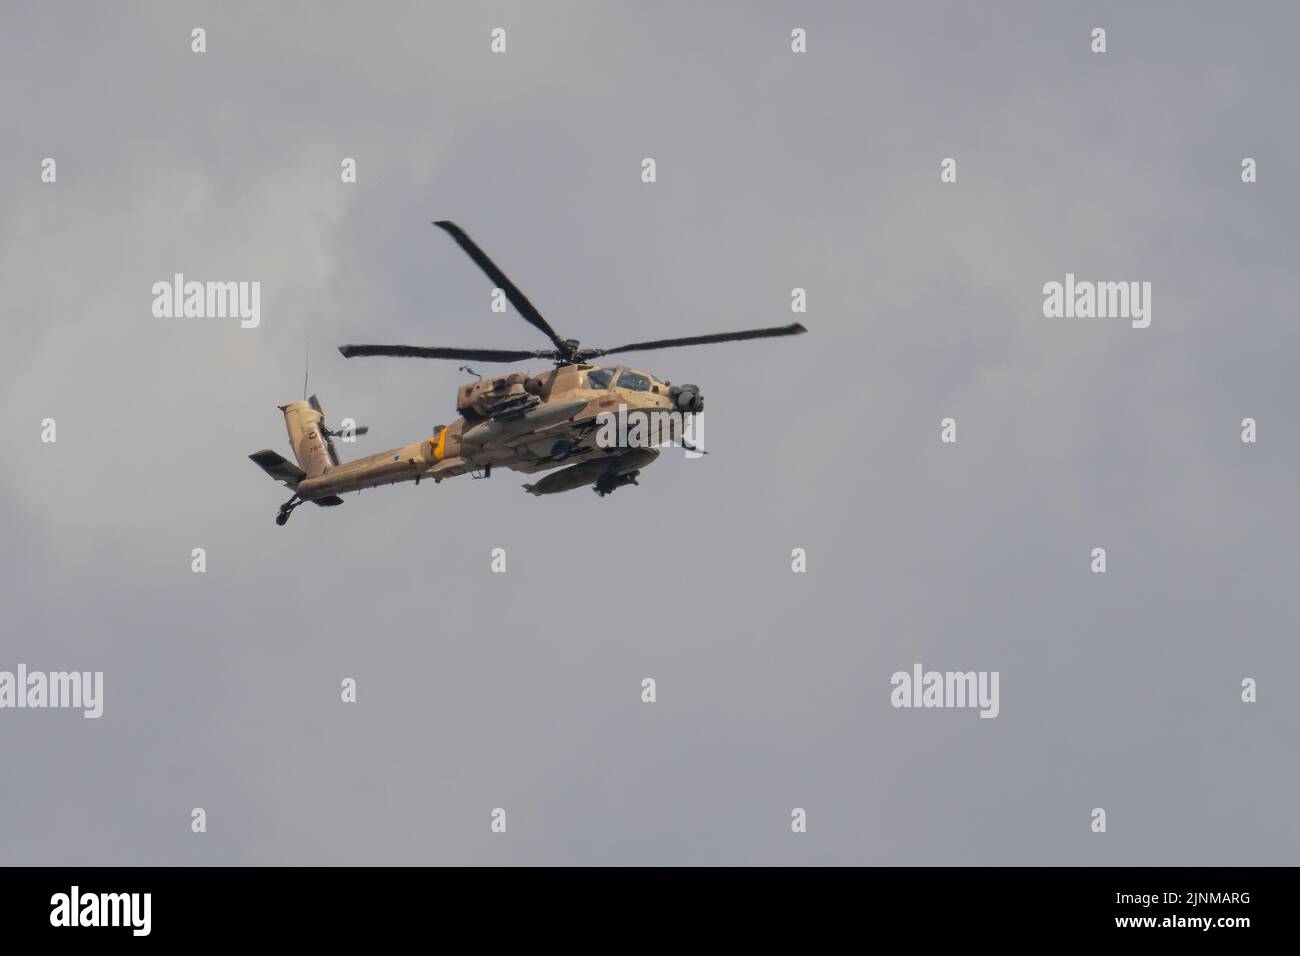 Jerusalén, Israel - 5th de mayo de 2022: Un helicóptero Apache Boeing AH-64 de la fuerza aérea israelí, volando en un cielo nublado. Foto de stock